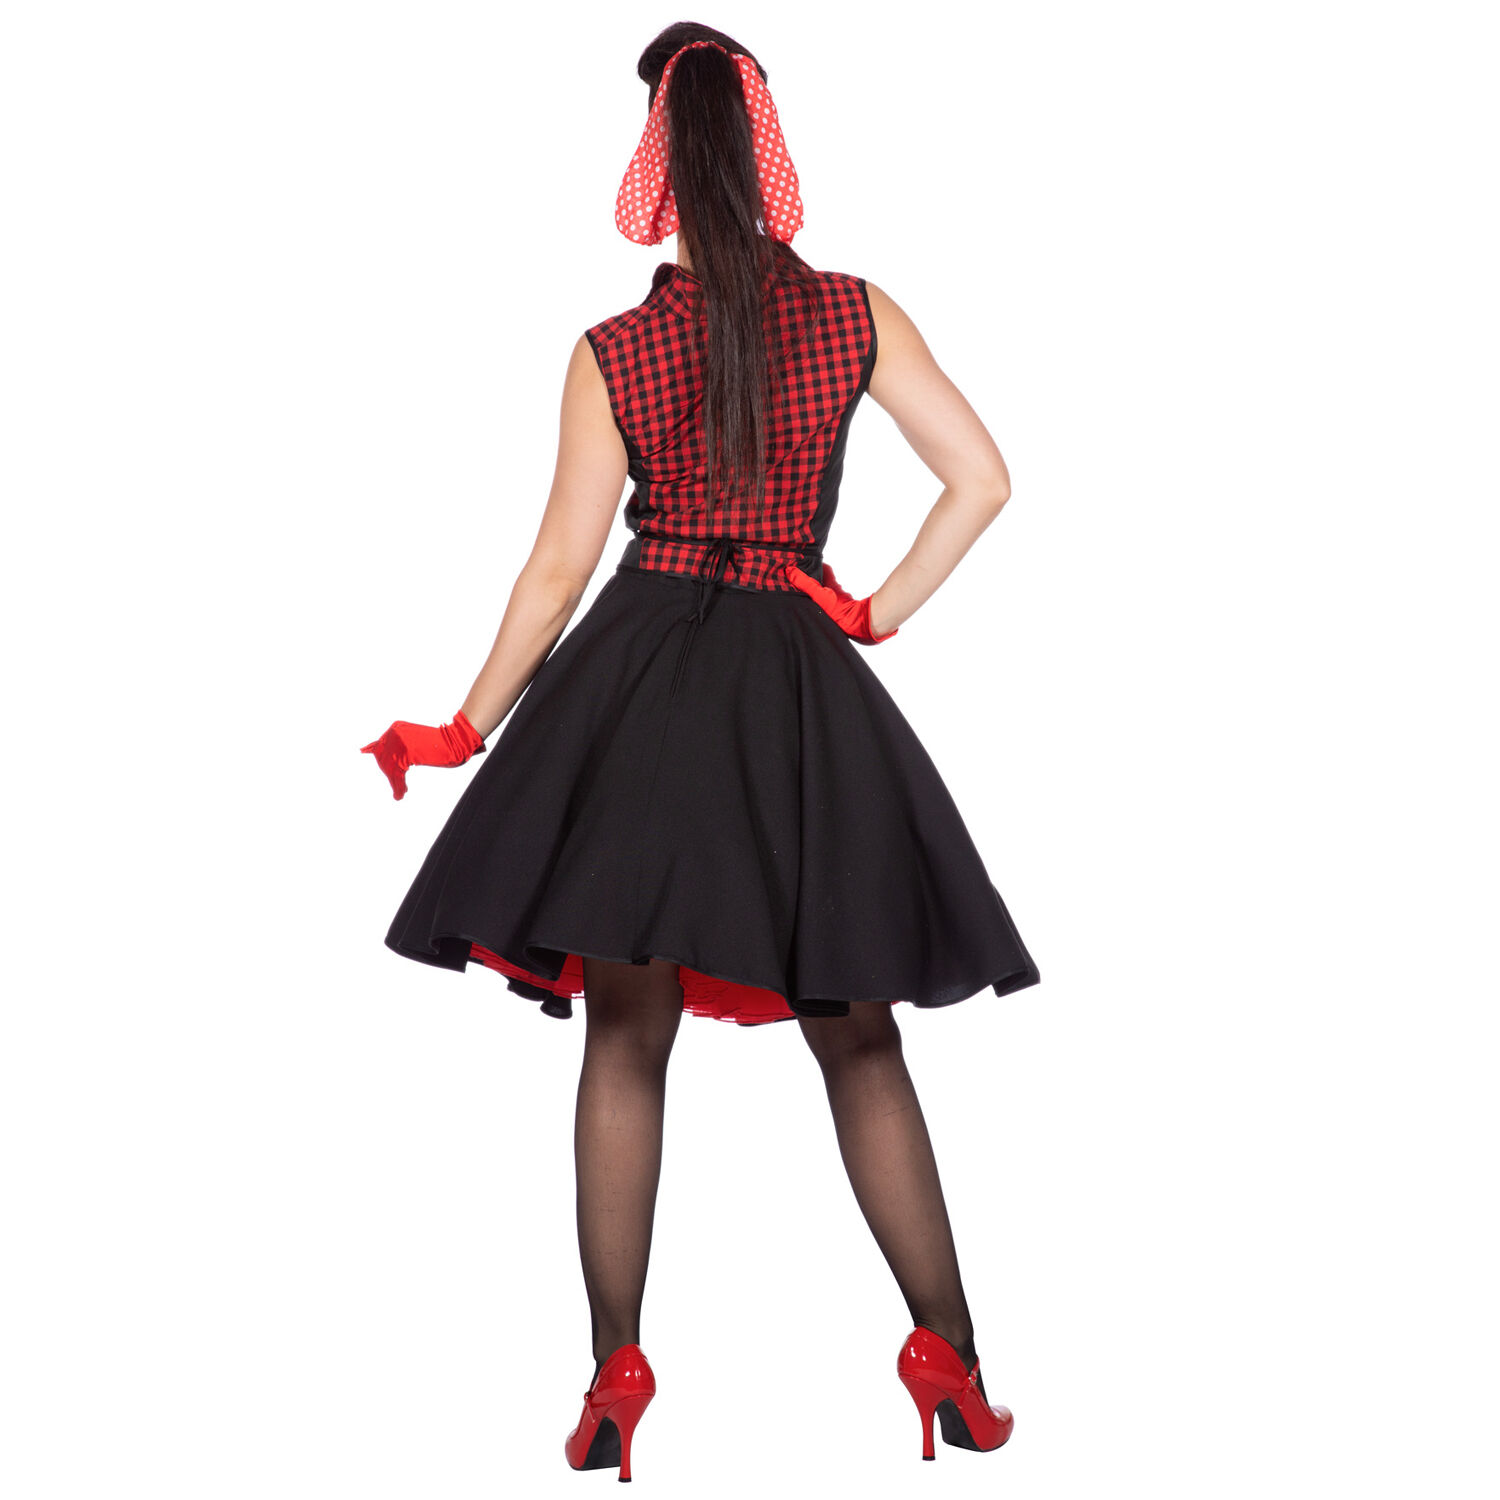 Premium-Line Damen-Kostüm Rockabilly Rizzo, Gr. 36 Bild 3